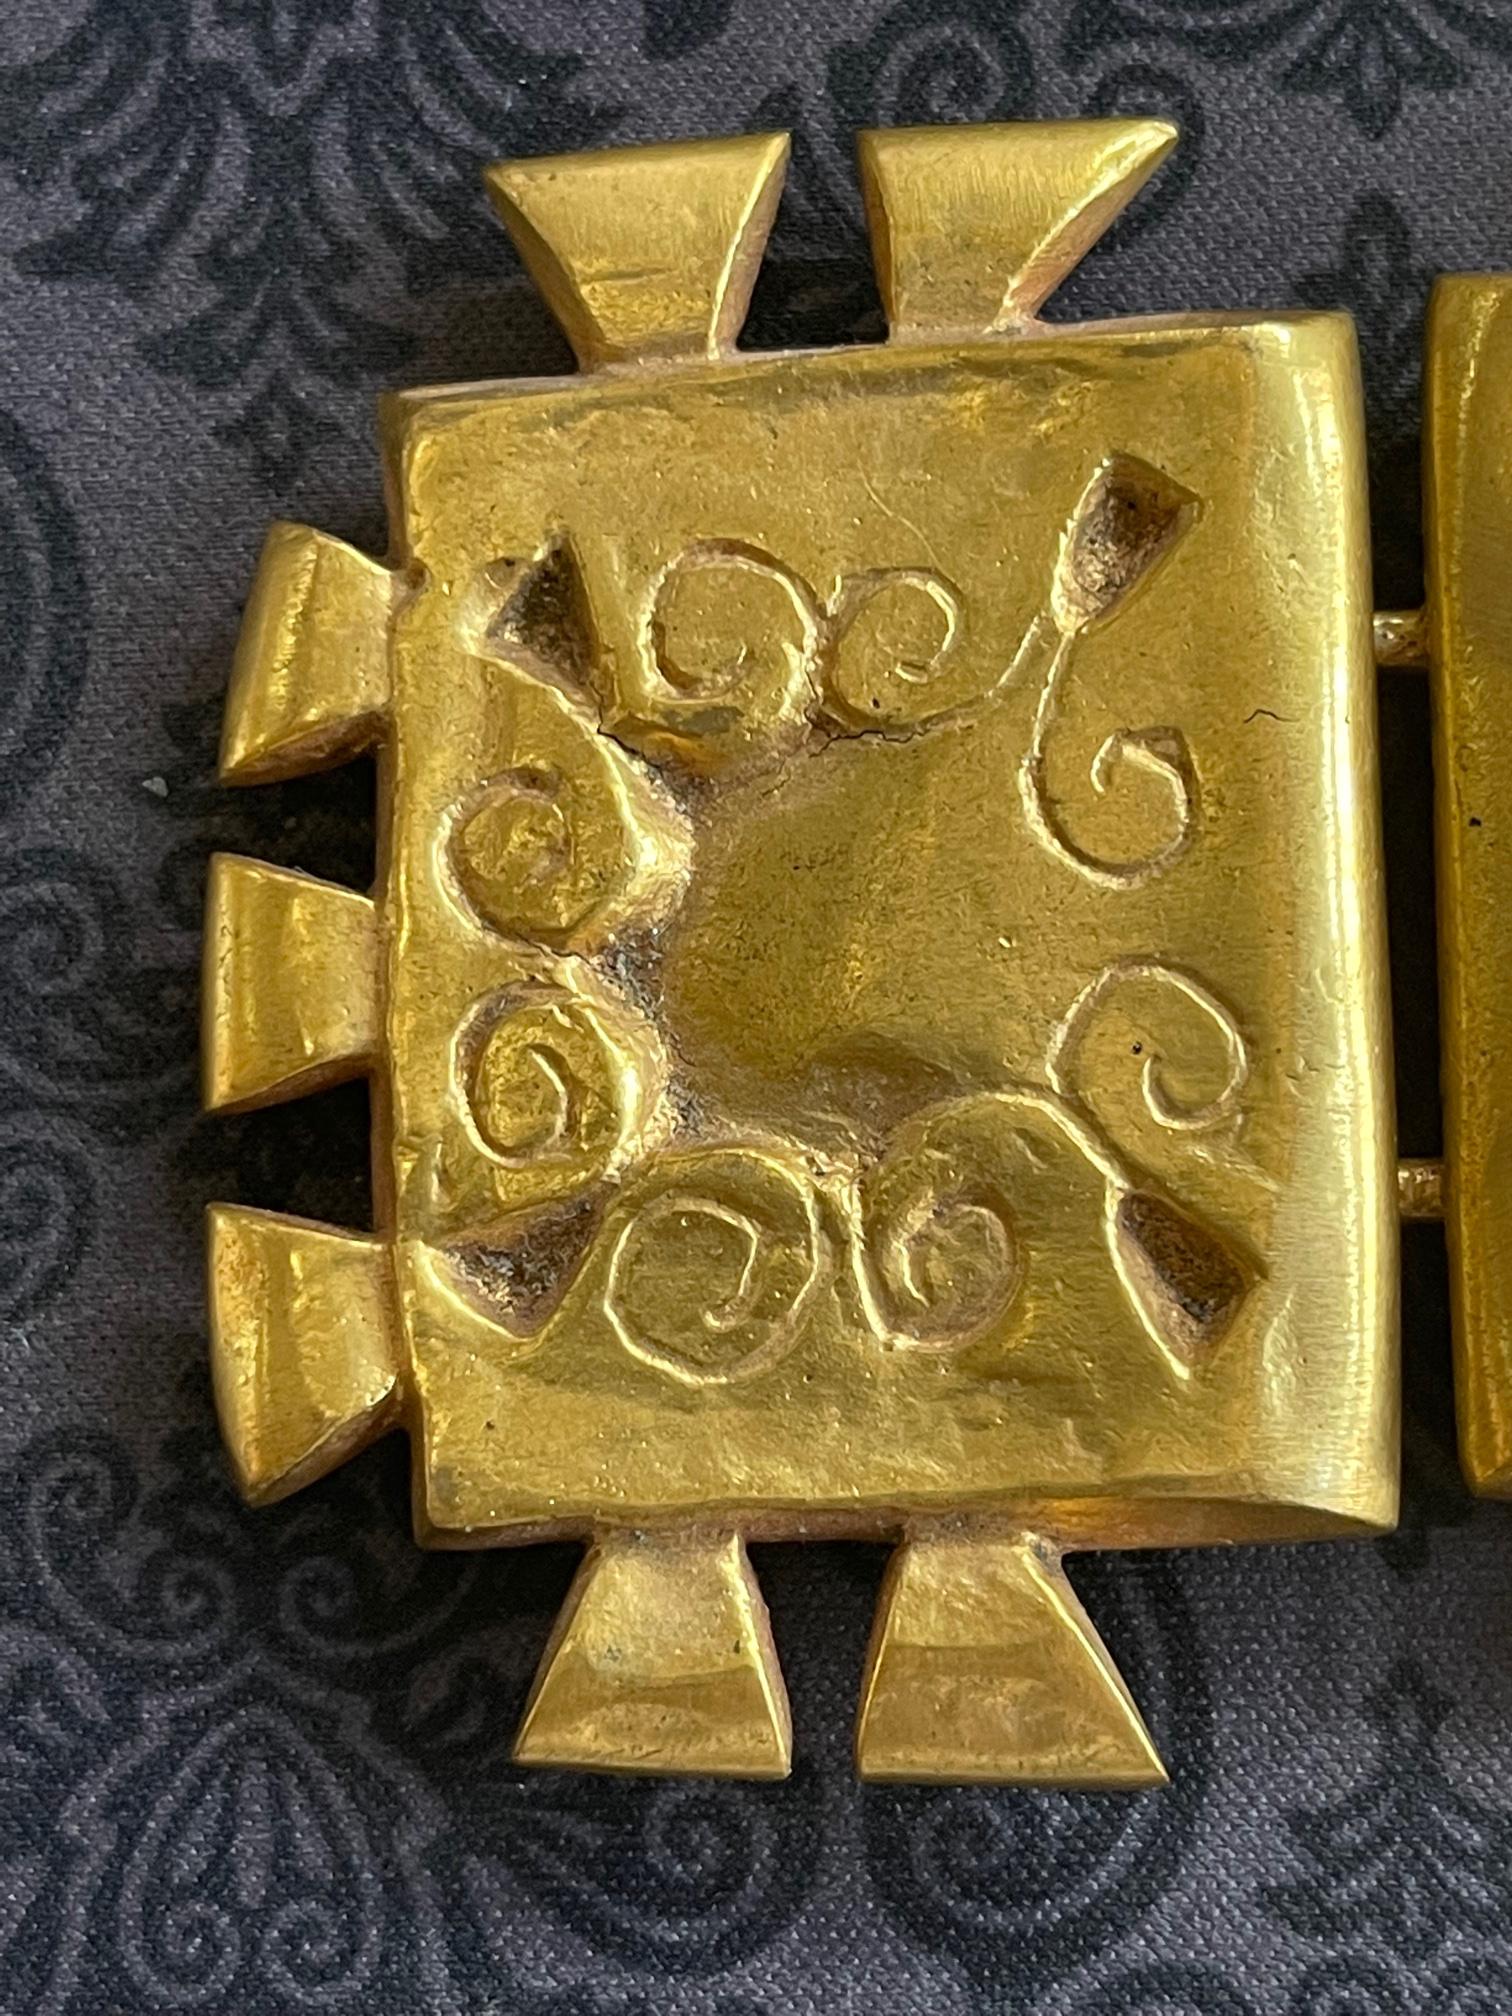 Gegossene zweiteilige Bronzeschnalle mit Haken und Öse auf der Rückseite von der französischen Juwelierin Line Vautrin (1913-1997). Die skulpturalen Stücke sind in einem seltenen Inka-Motiv gehalten, mit dreieckigen Einbuchtungen im Kontrast zu